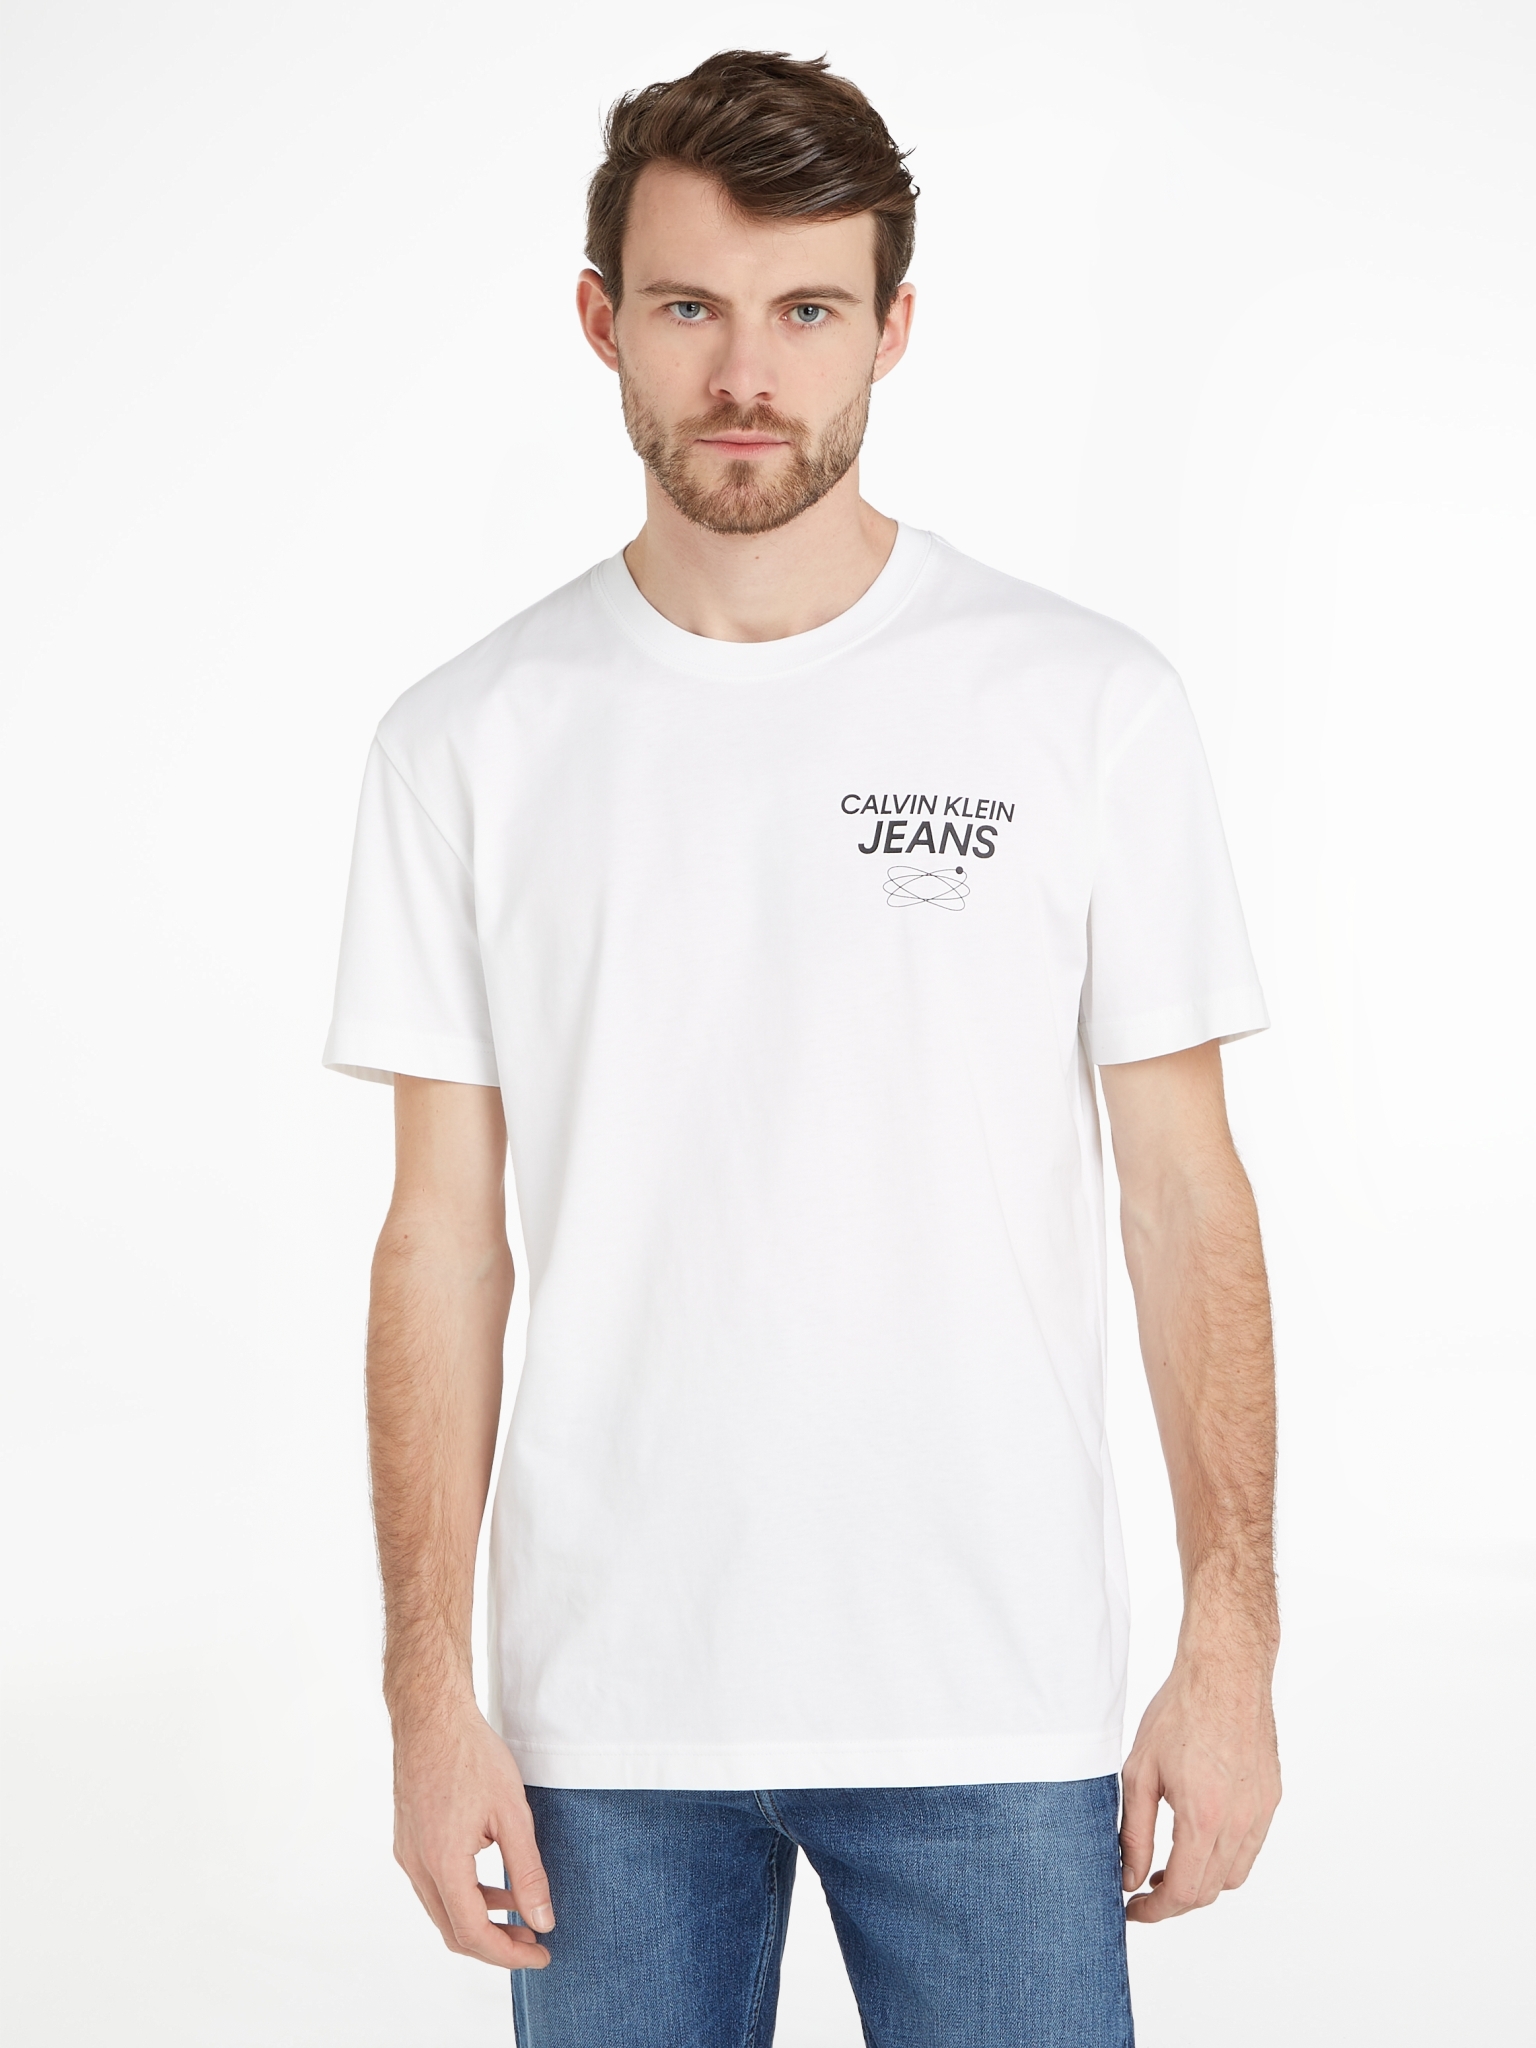 CALVIN KLEIN JEANS Baumwolle am aus Rücken WÖHRL | 10716438 kaufen mit Logo T-Shirt